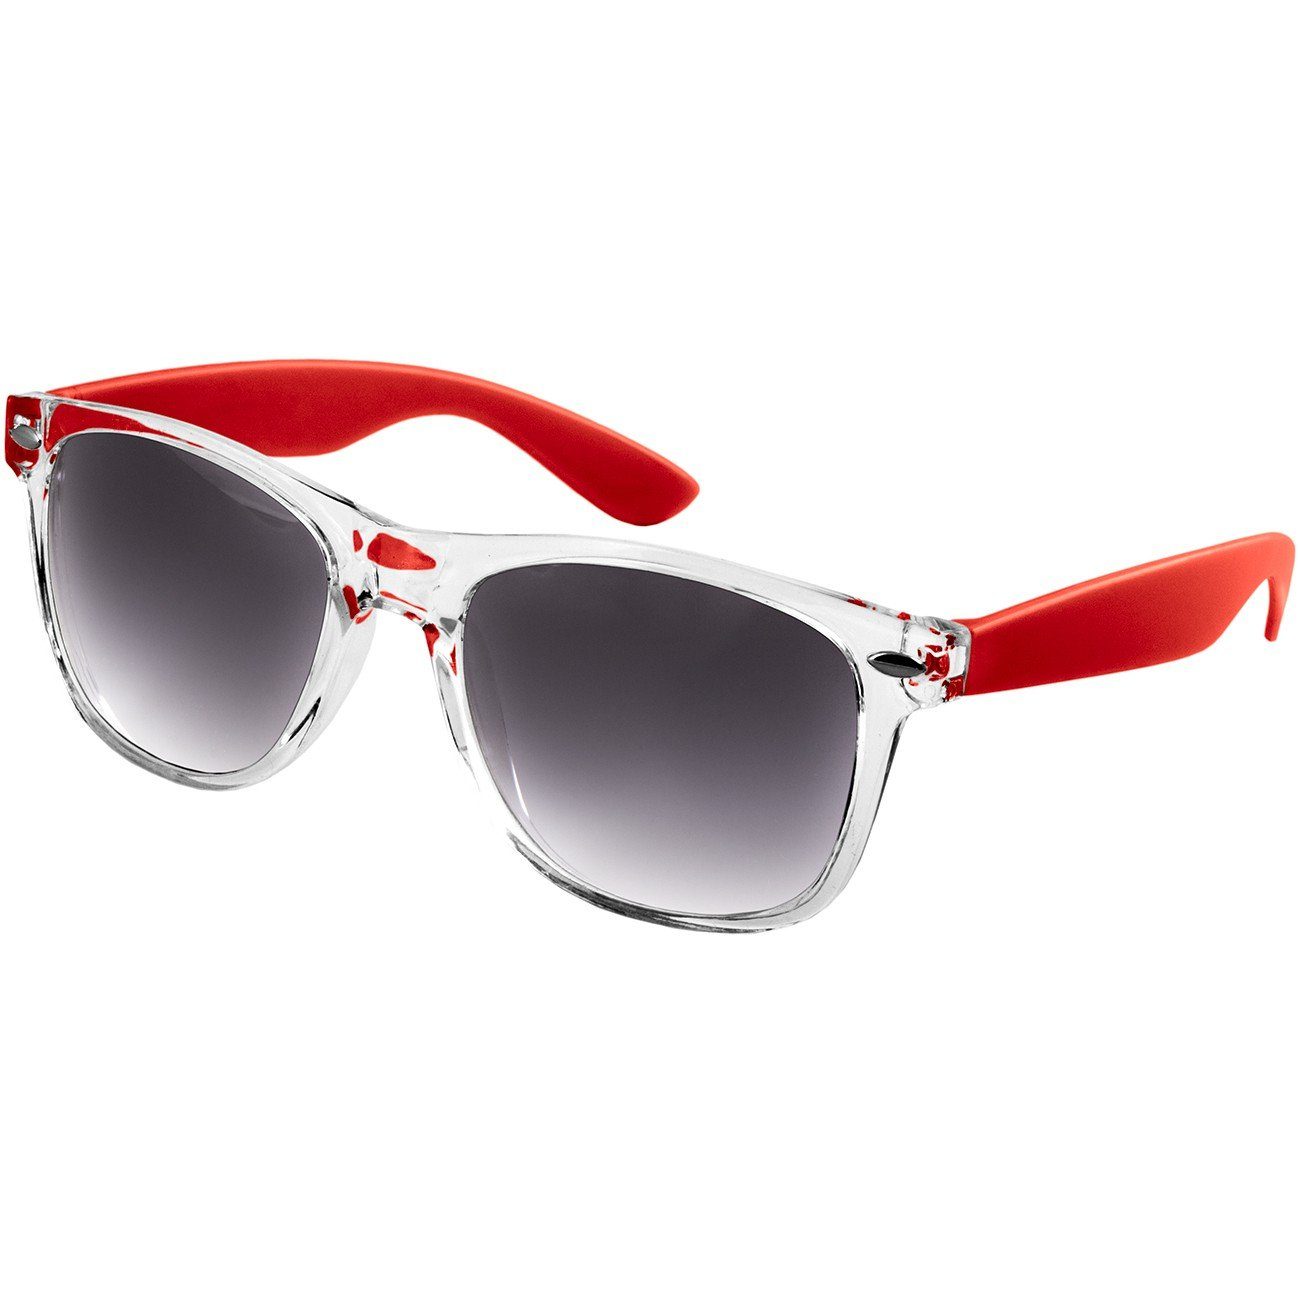 Caspar Sonnenbrille SG017 Damen RETRO Designbrille rot / schwarz getönt